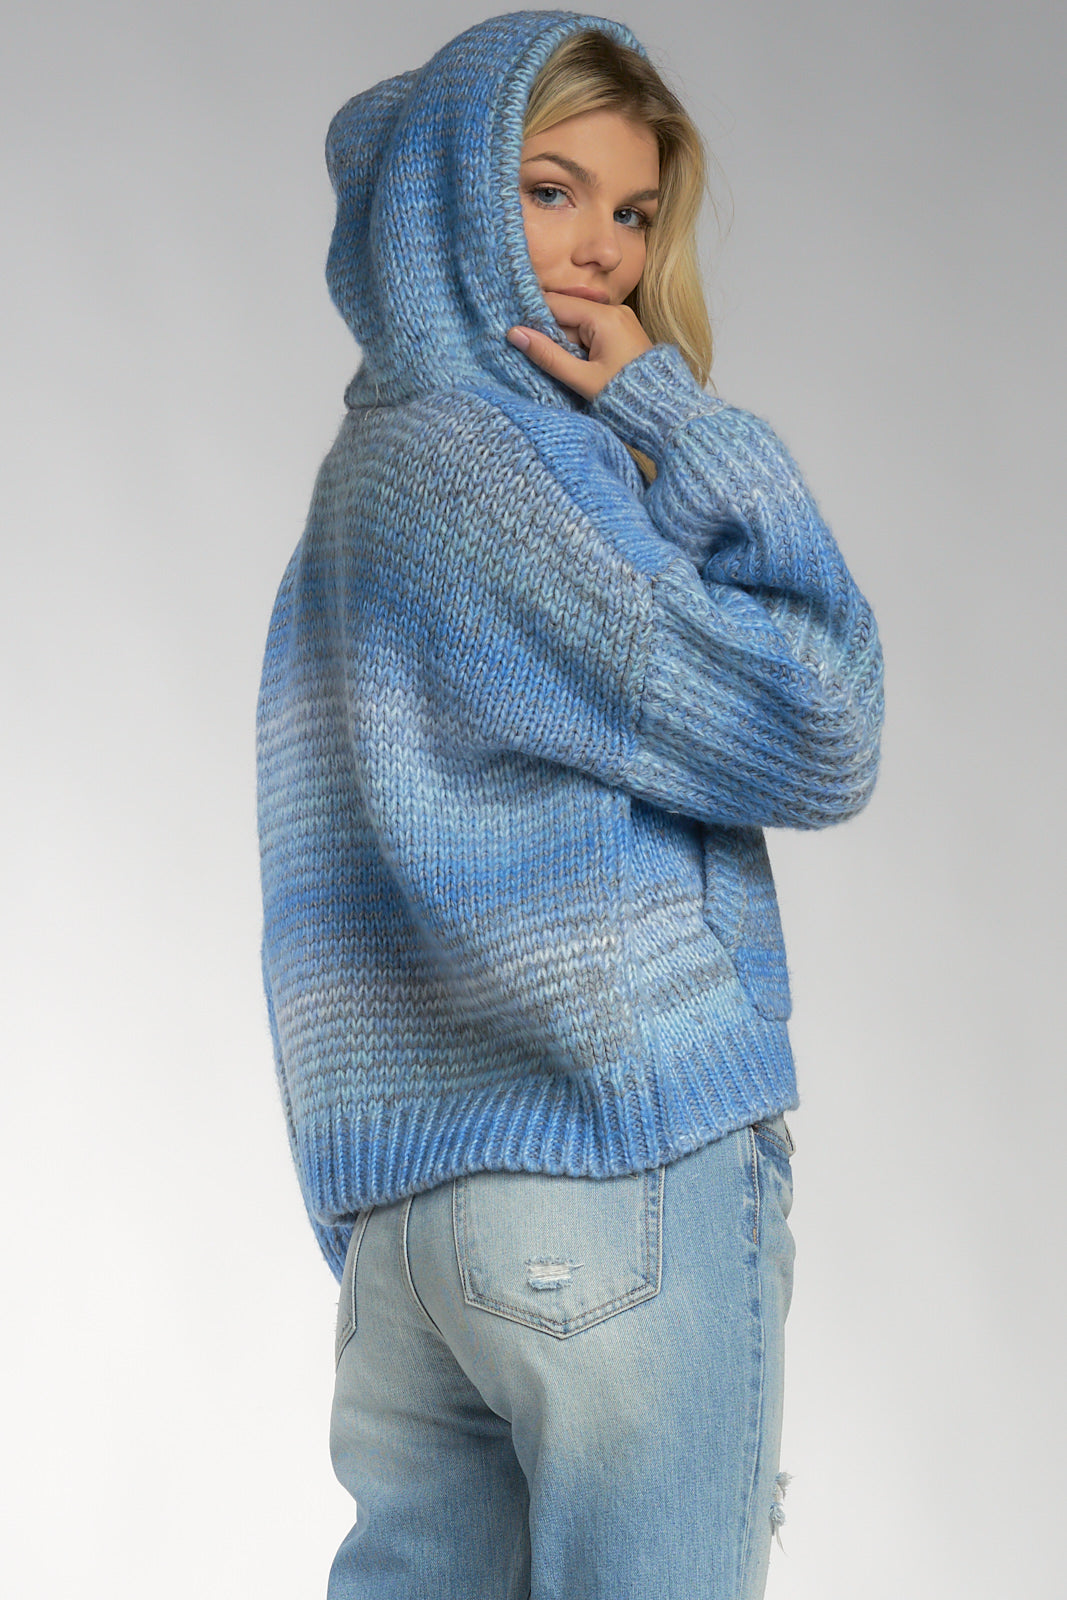 Blue Maui Hooded Sweater